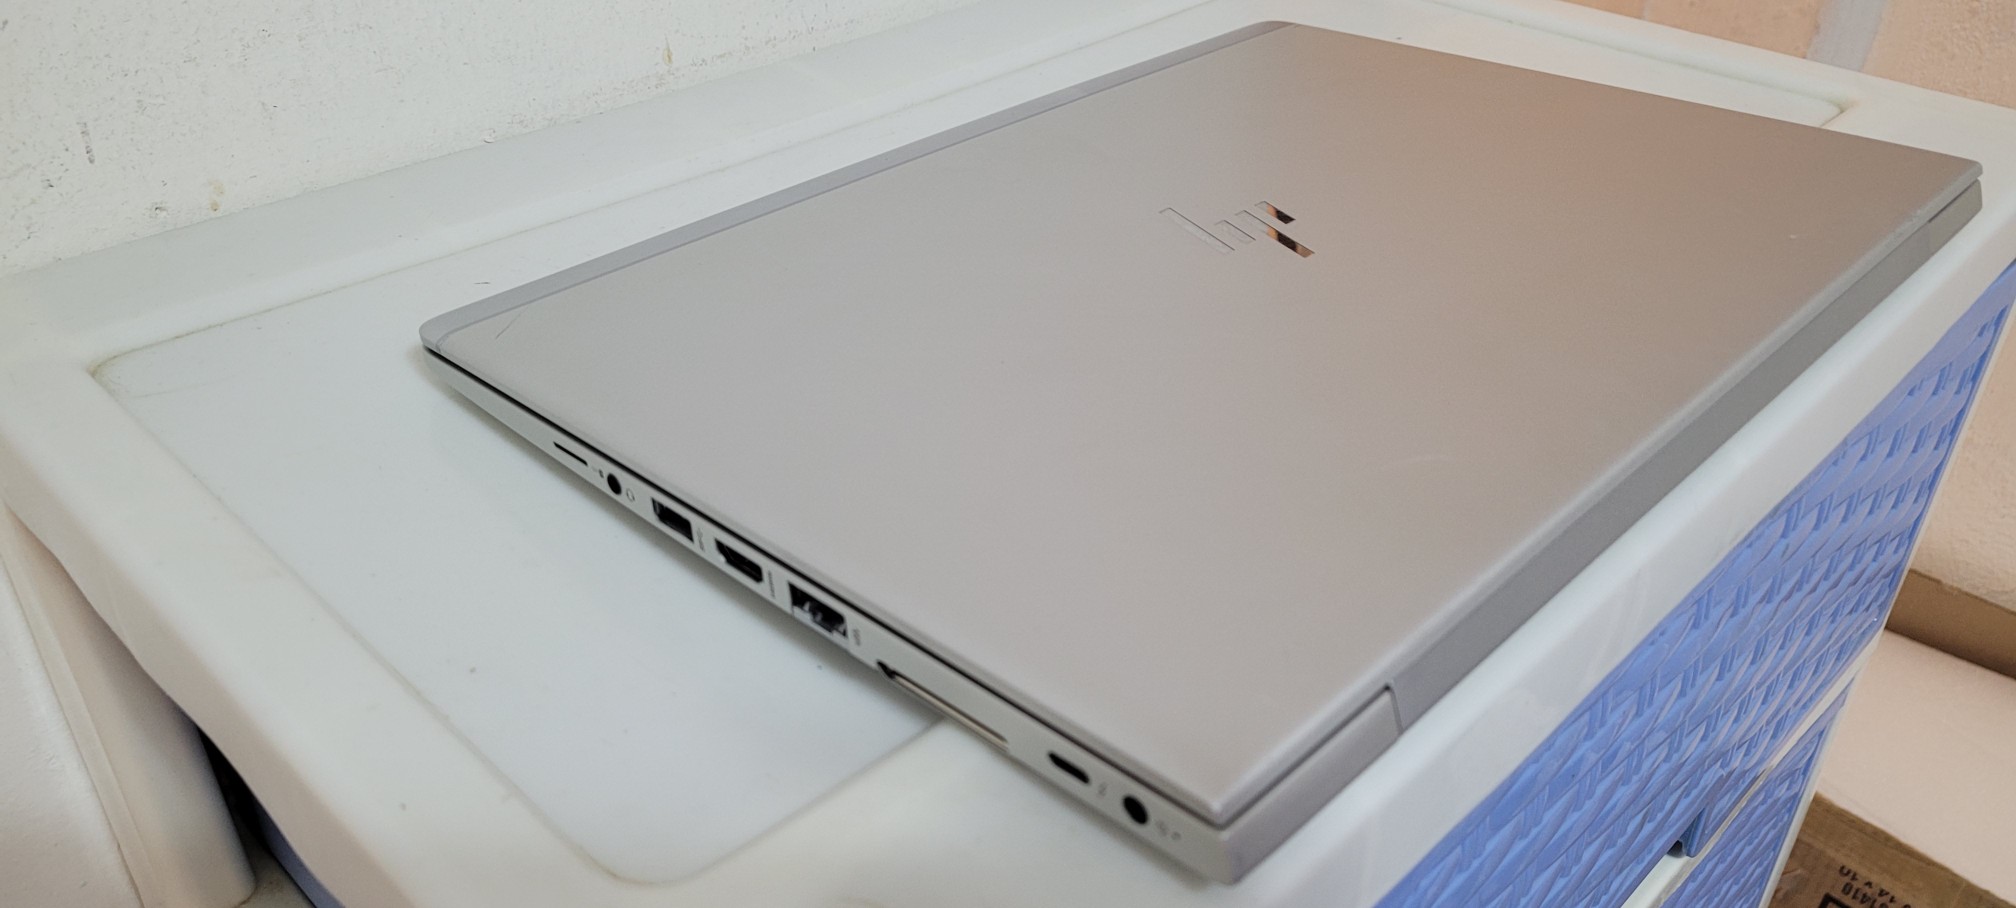 computadoras y laptops - Laptop hp G3 14 Pulg Core i5 7ma Gen Ram 8gb ddr4 Disco 256gb SSD Wifi Bluetoth 2